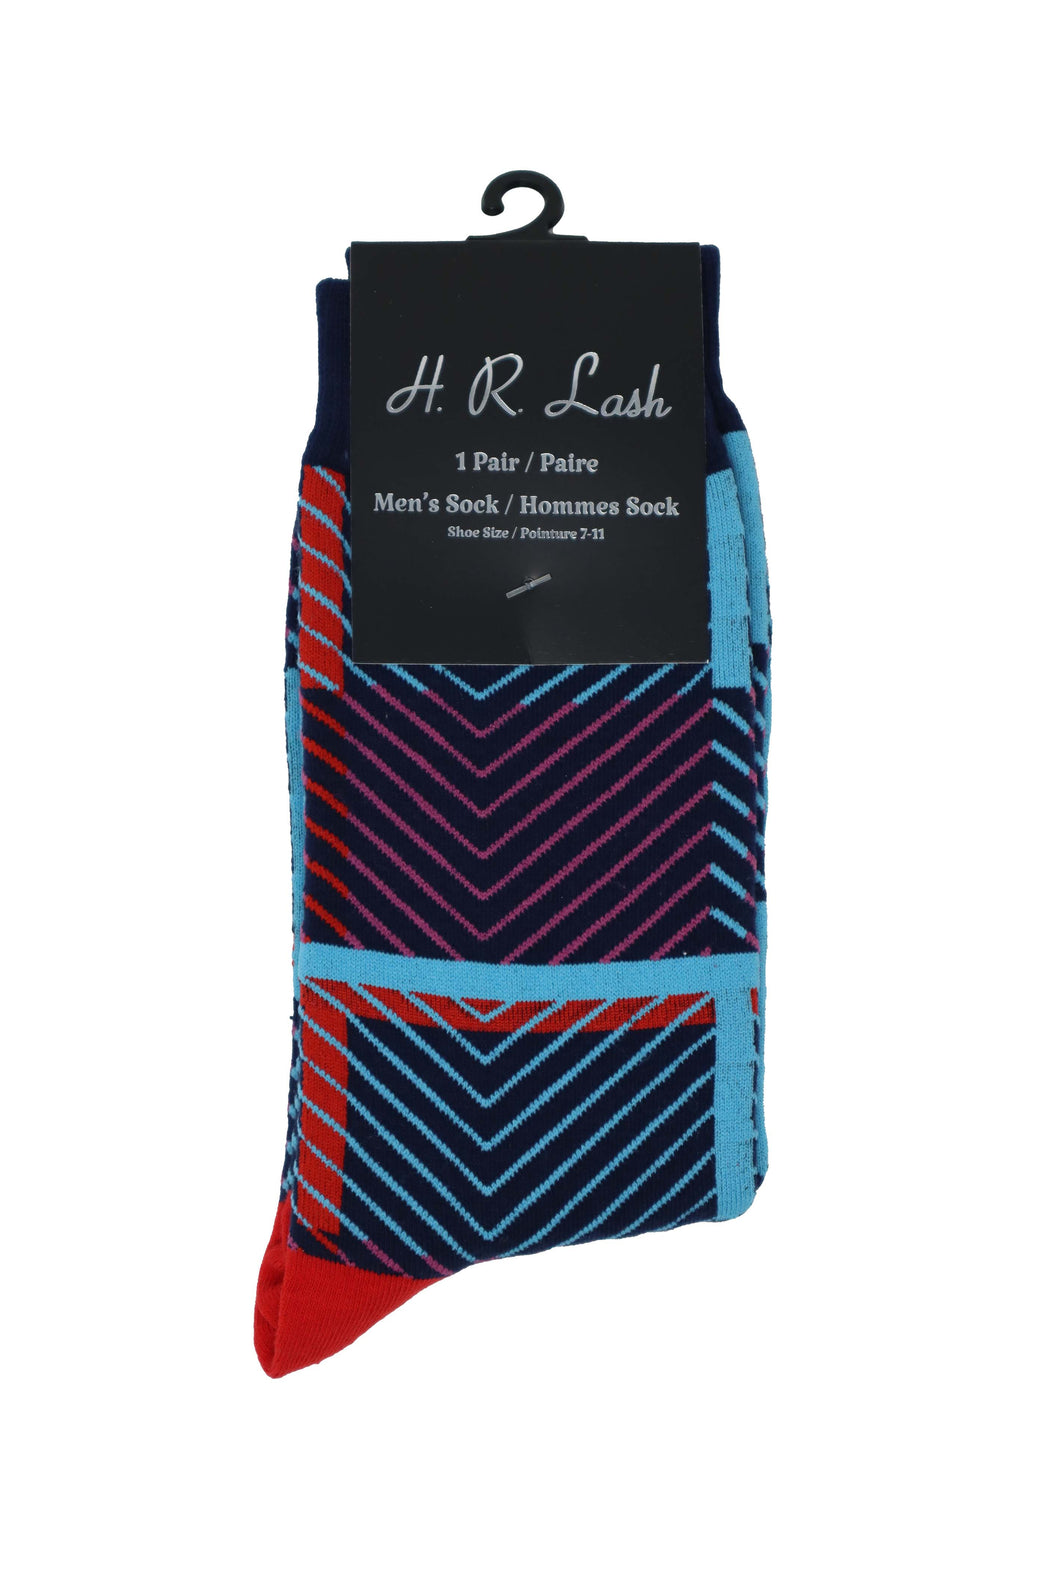 H. R. Lash | FS248 | Fun Socks | Blue / Pink / Red Pattern